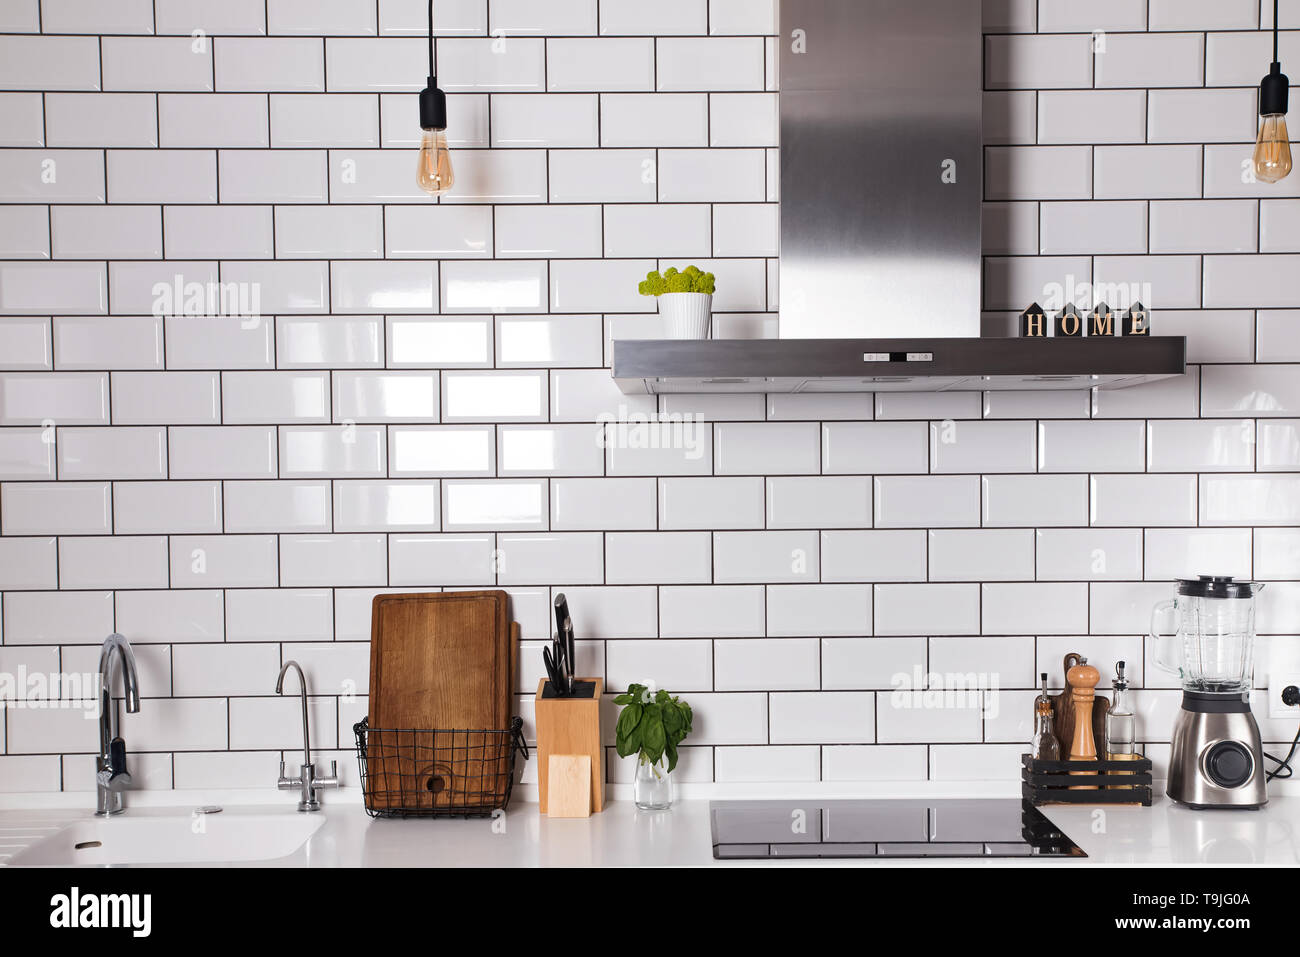 Moderne Küche mit Ziegel weiße Fliesen an der Wand und verschiedenen  Utensilien auf dem Tisch Stockfotografie - Alamy